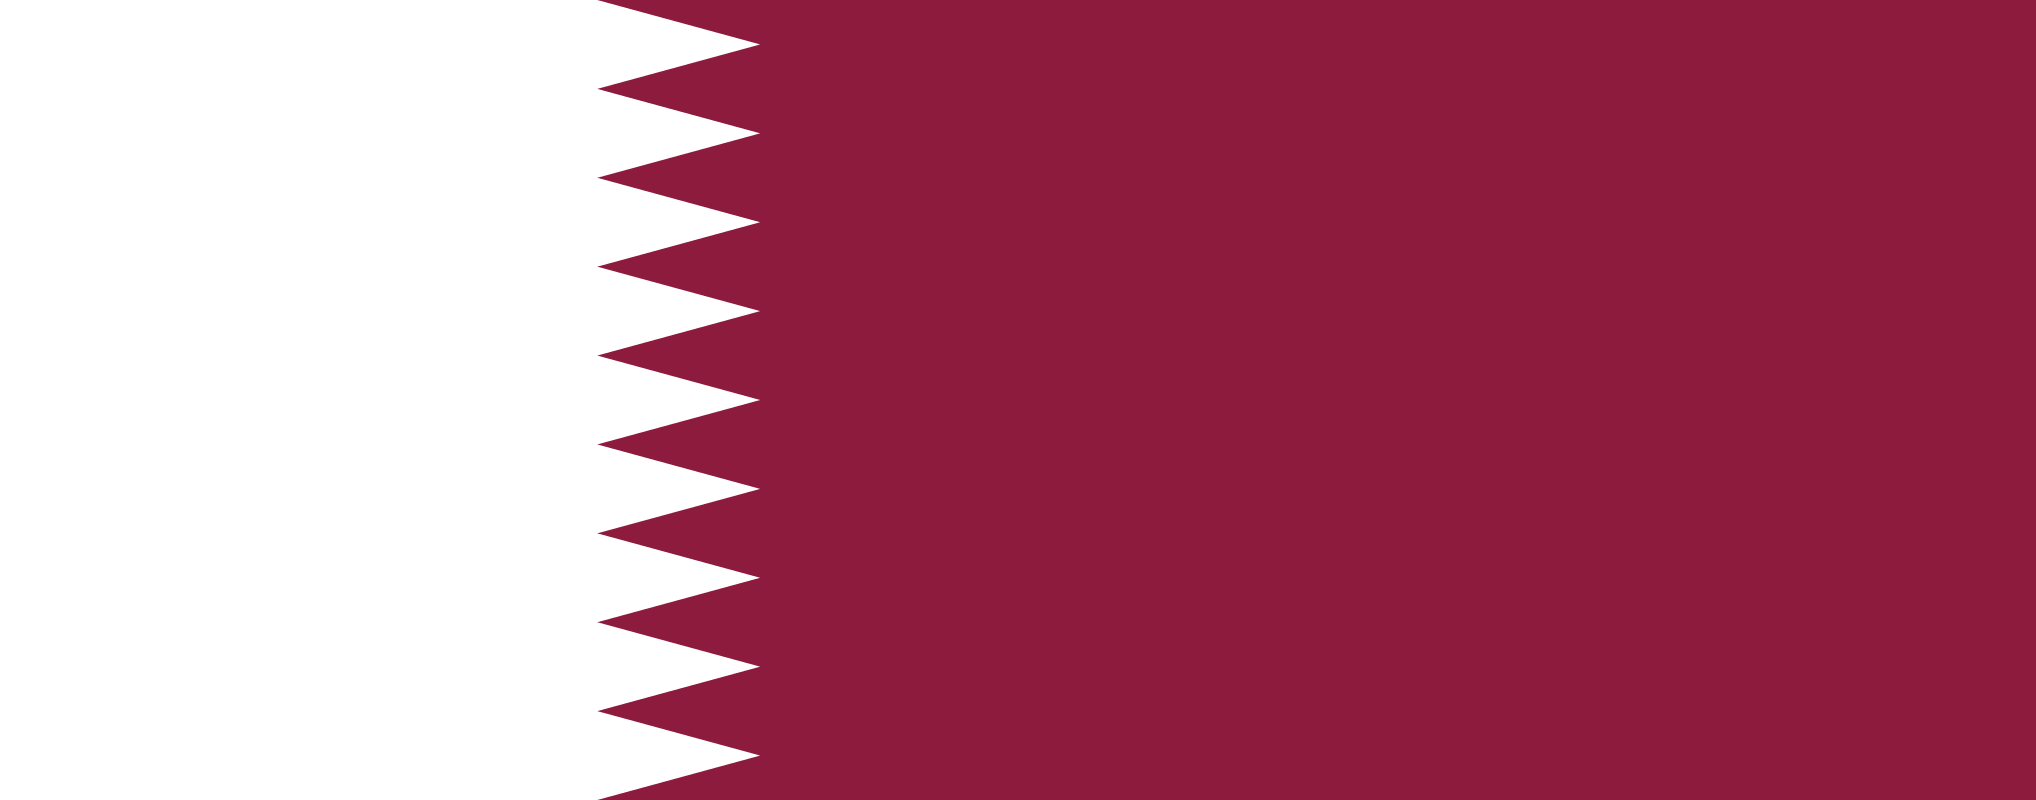 Resultado de imagen para qatar  png